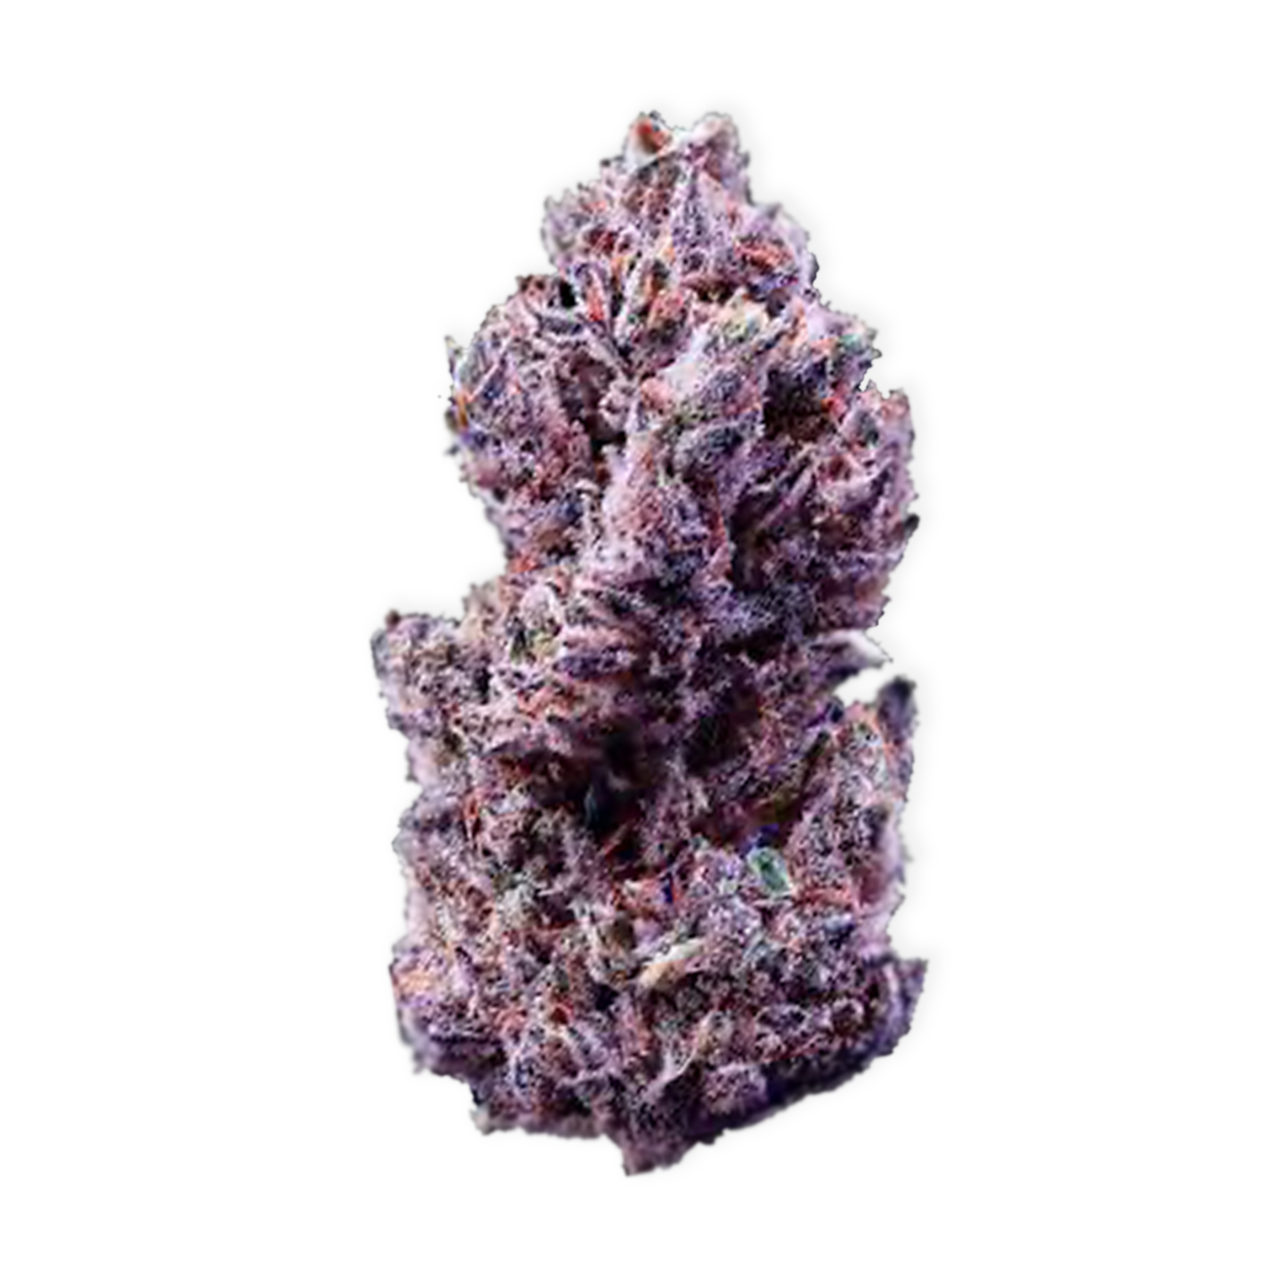 purple cookie weed